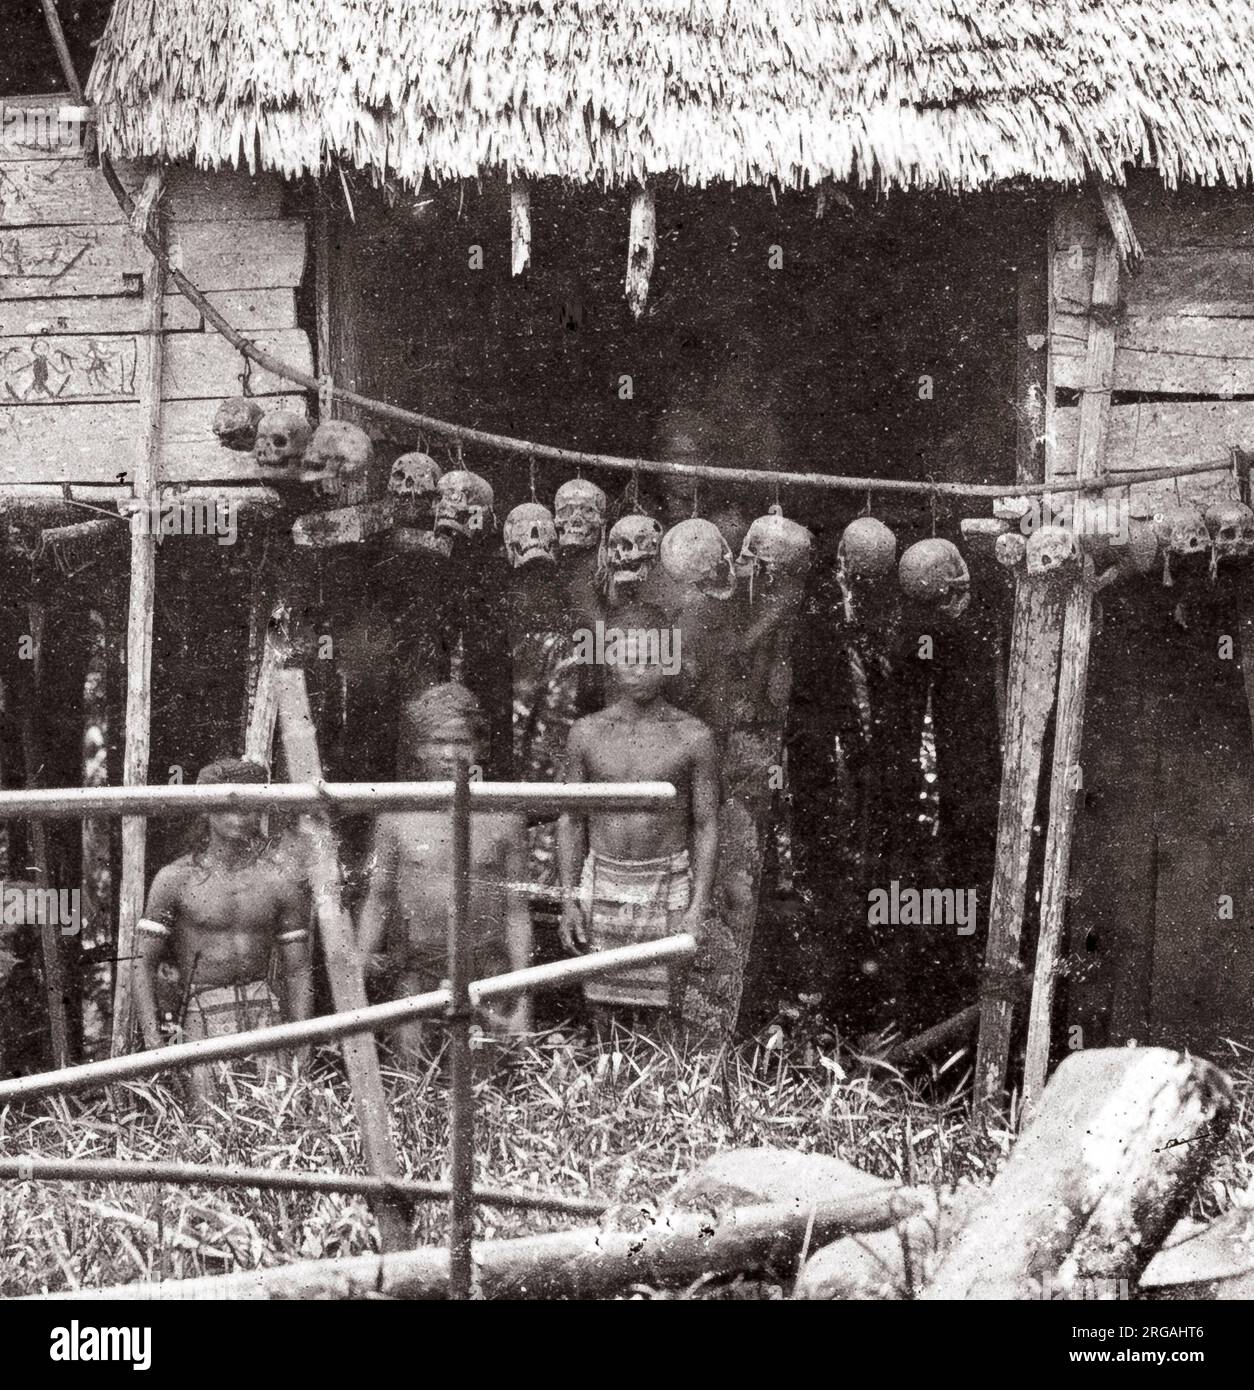 c. 1870s - Indie Orientali olandesi, Indonesia Sumatra - casa appartenente a membri di una tribù di caccia alla testa con teschi accerchiati sopra l'ingresso, probabilmente tribù di Dayak. Anche un'immagine più ampia è disponibile. Foto Stock